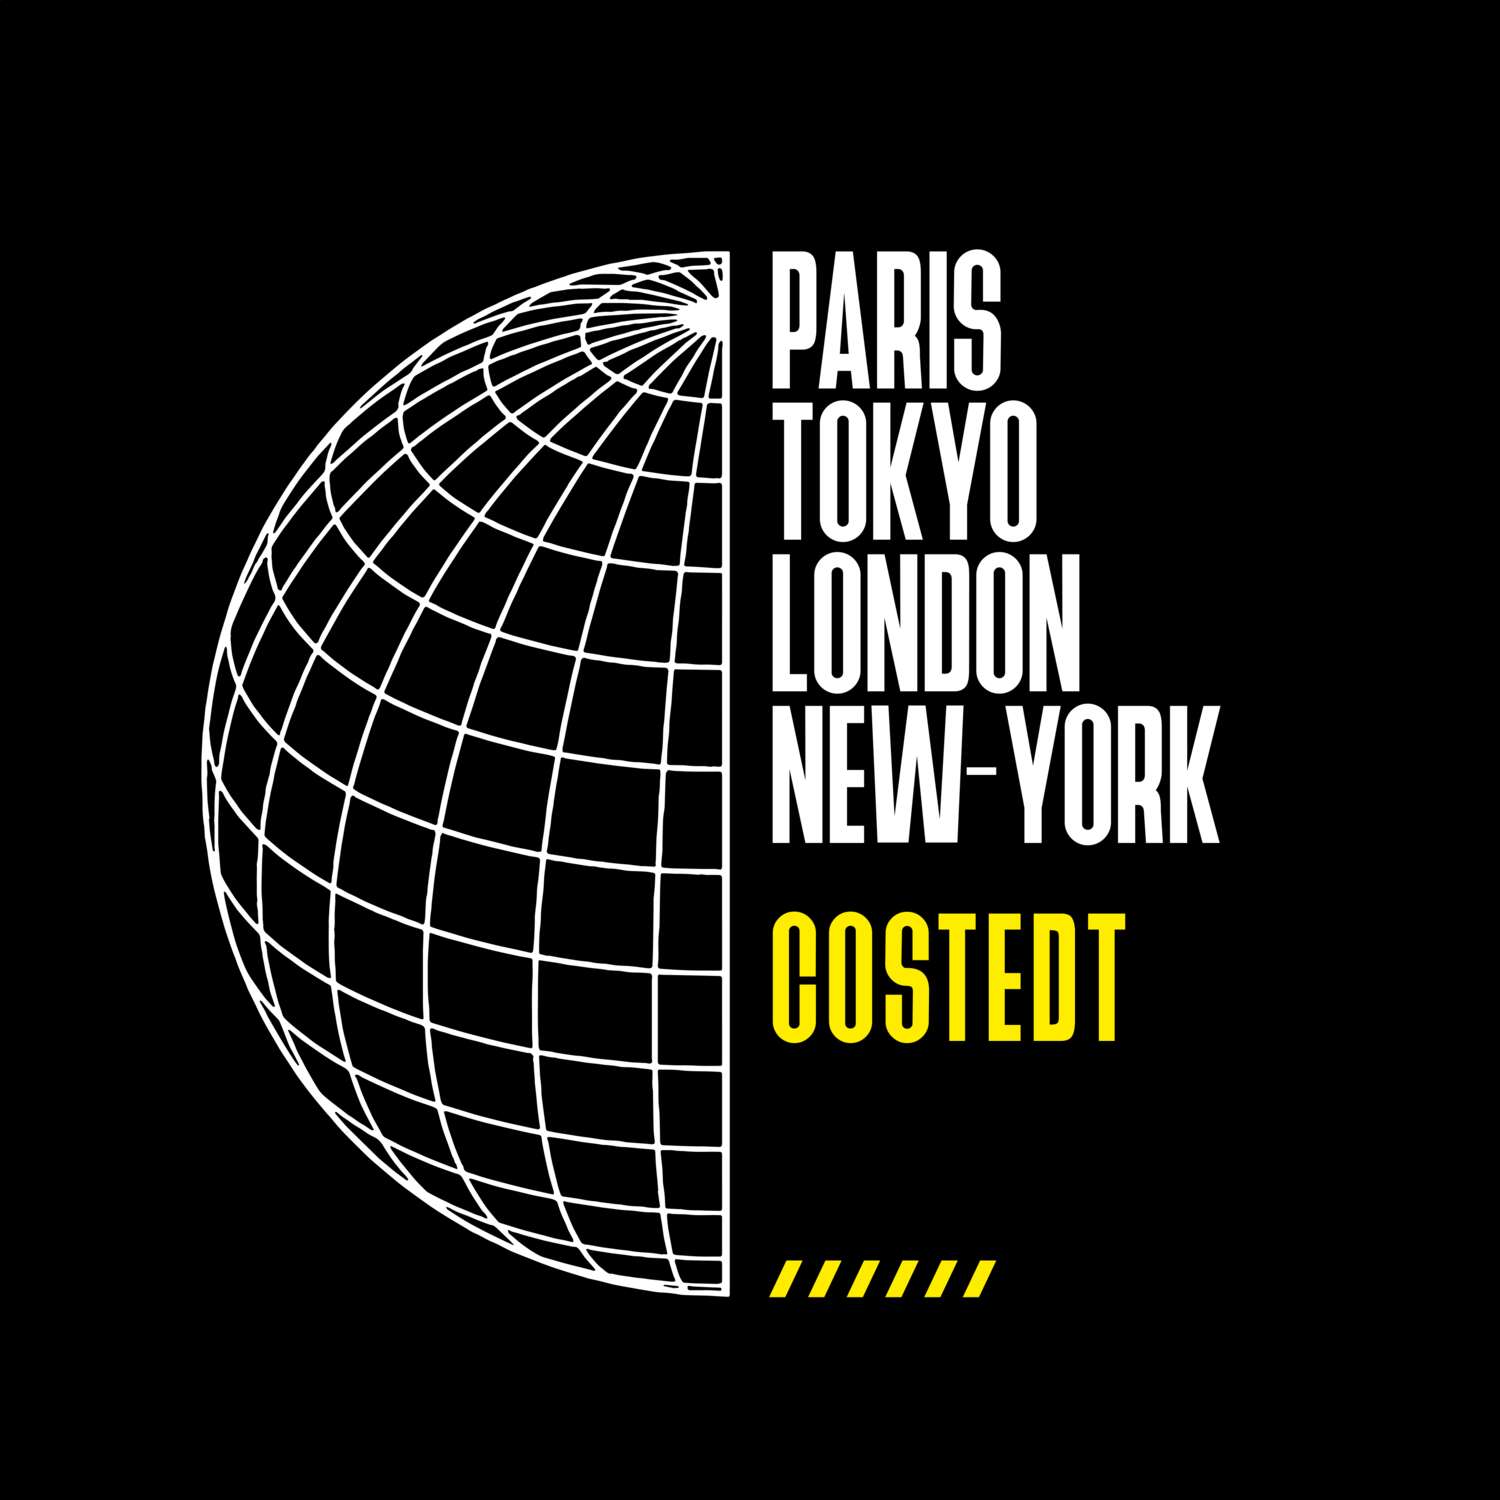 Costedt T-Shirt »Paris Tokyo London«